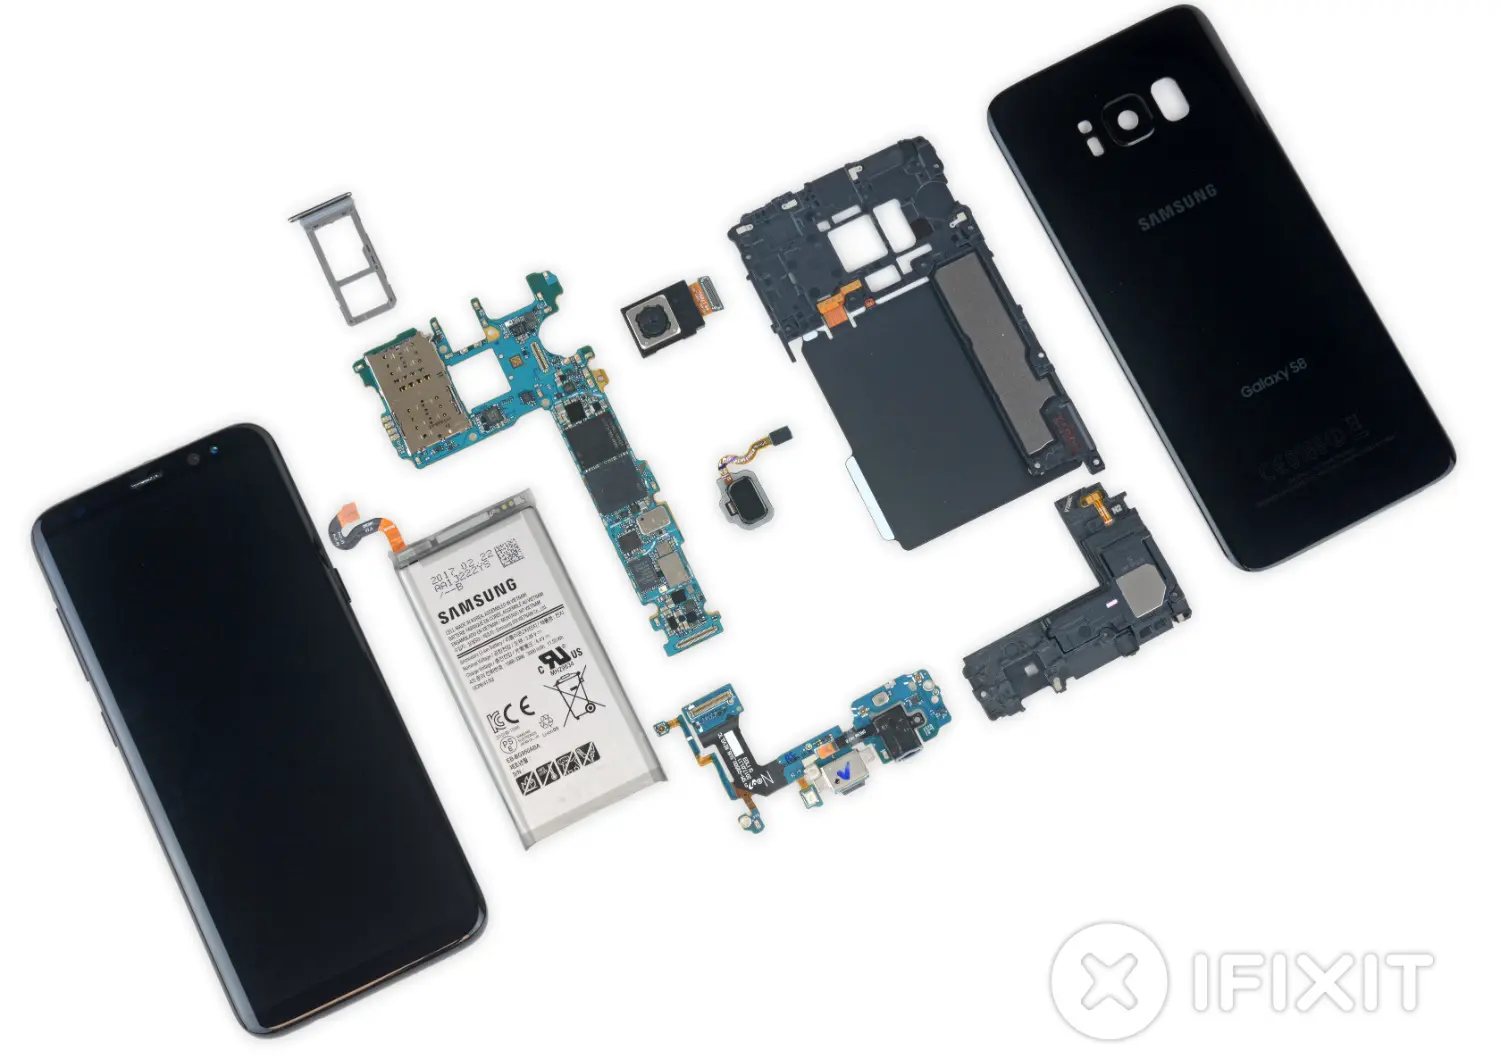 Galaxy S8 es uno de los smartphones más difíciles de reparar, según iFixit